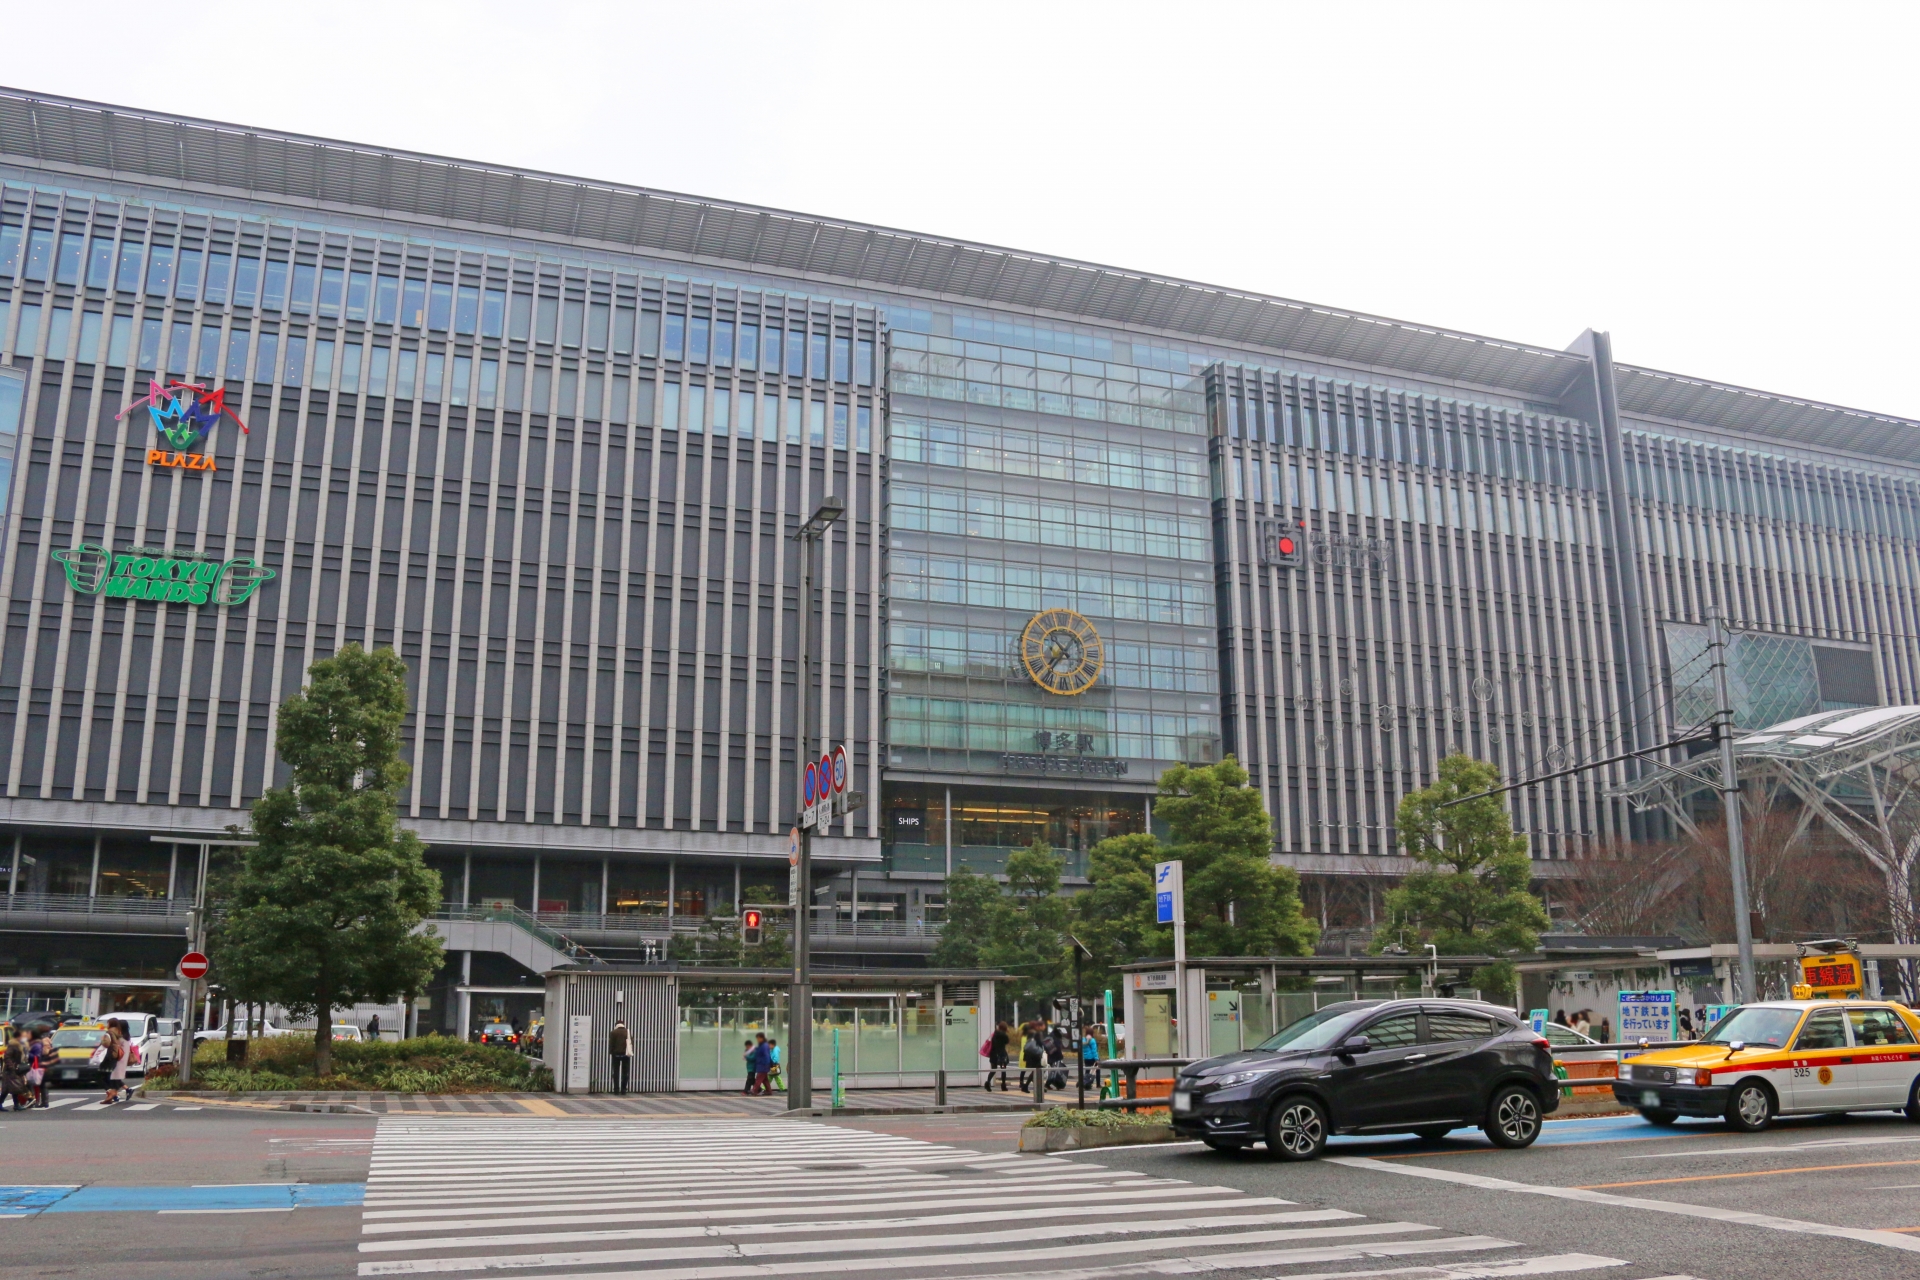 交通の要所としてだけではなく、「アミュプラザ博多」「阪急博多」などが入る駅ビル「JR博多シティ」など、ショッピングエリアとしても人気の博多駅。駅前広場ではイベントが頻繁に開催されている。